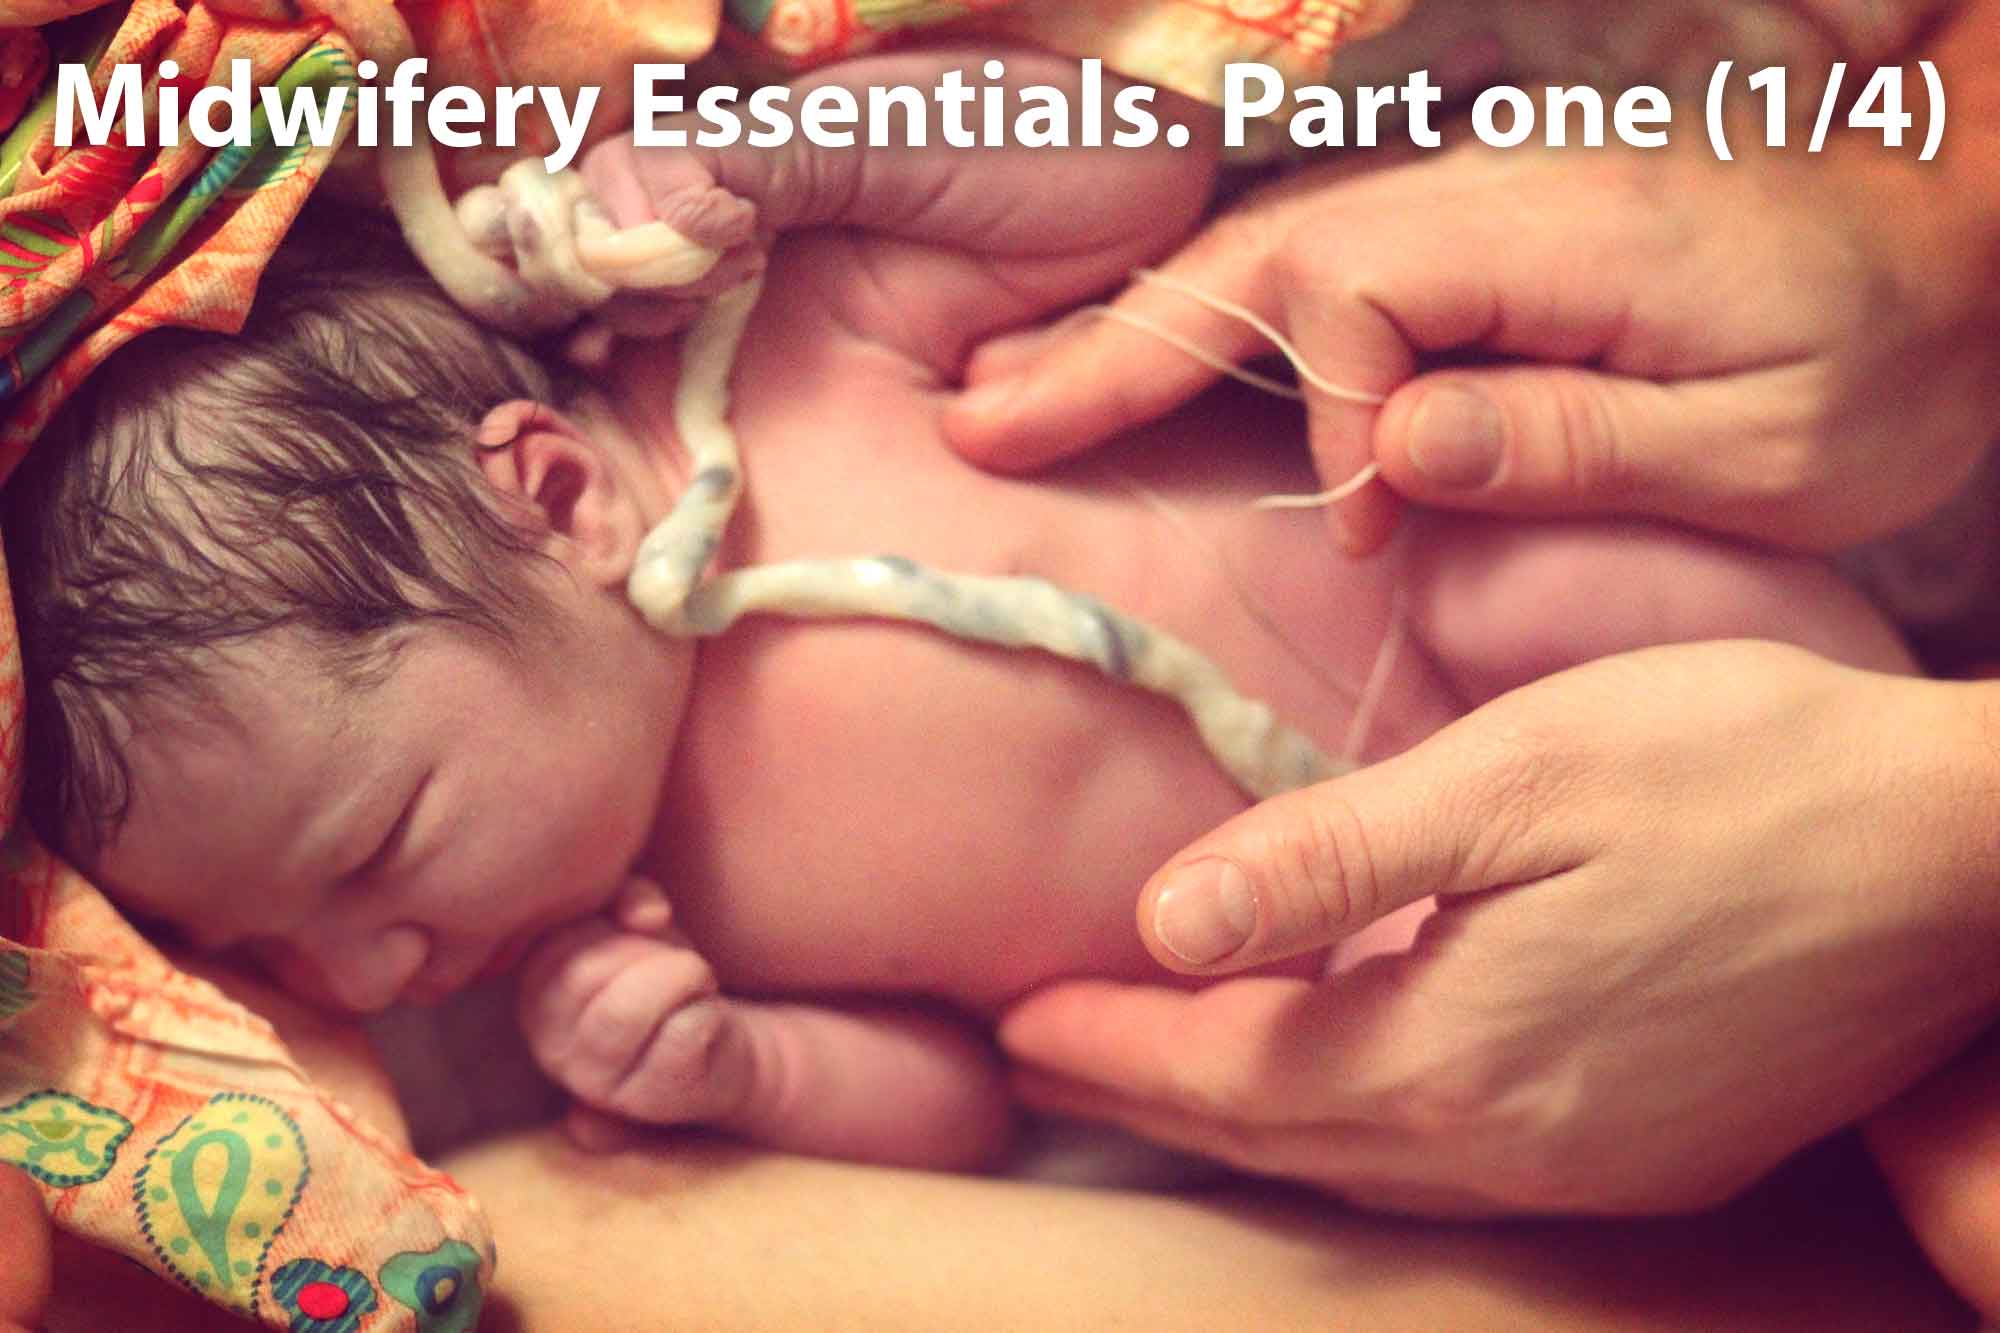 Midwifery Essentials. Part one (1/4)